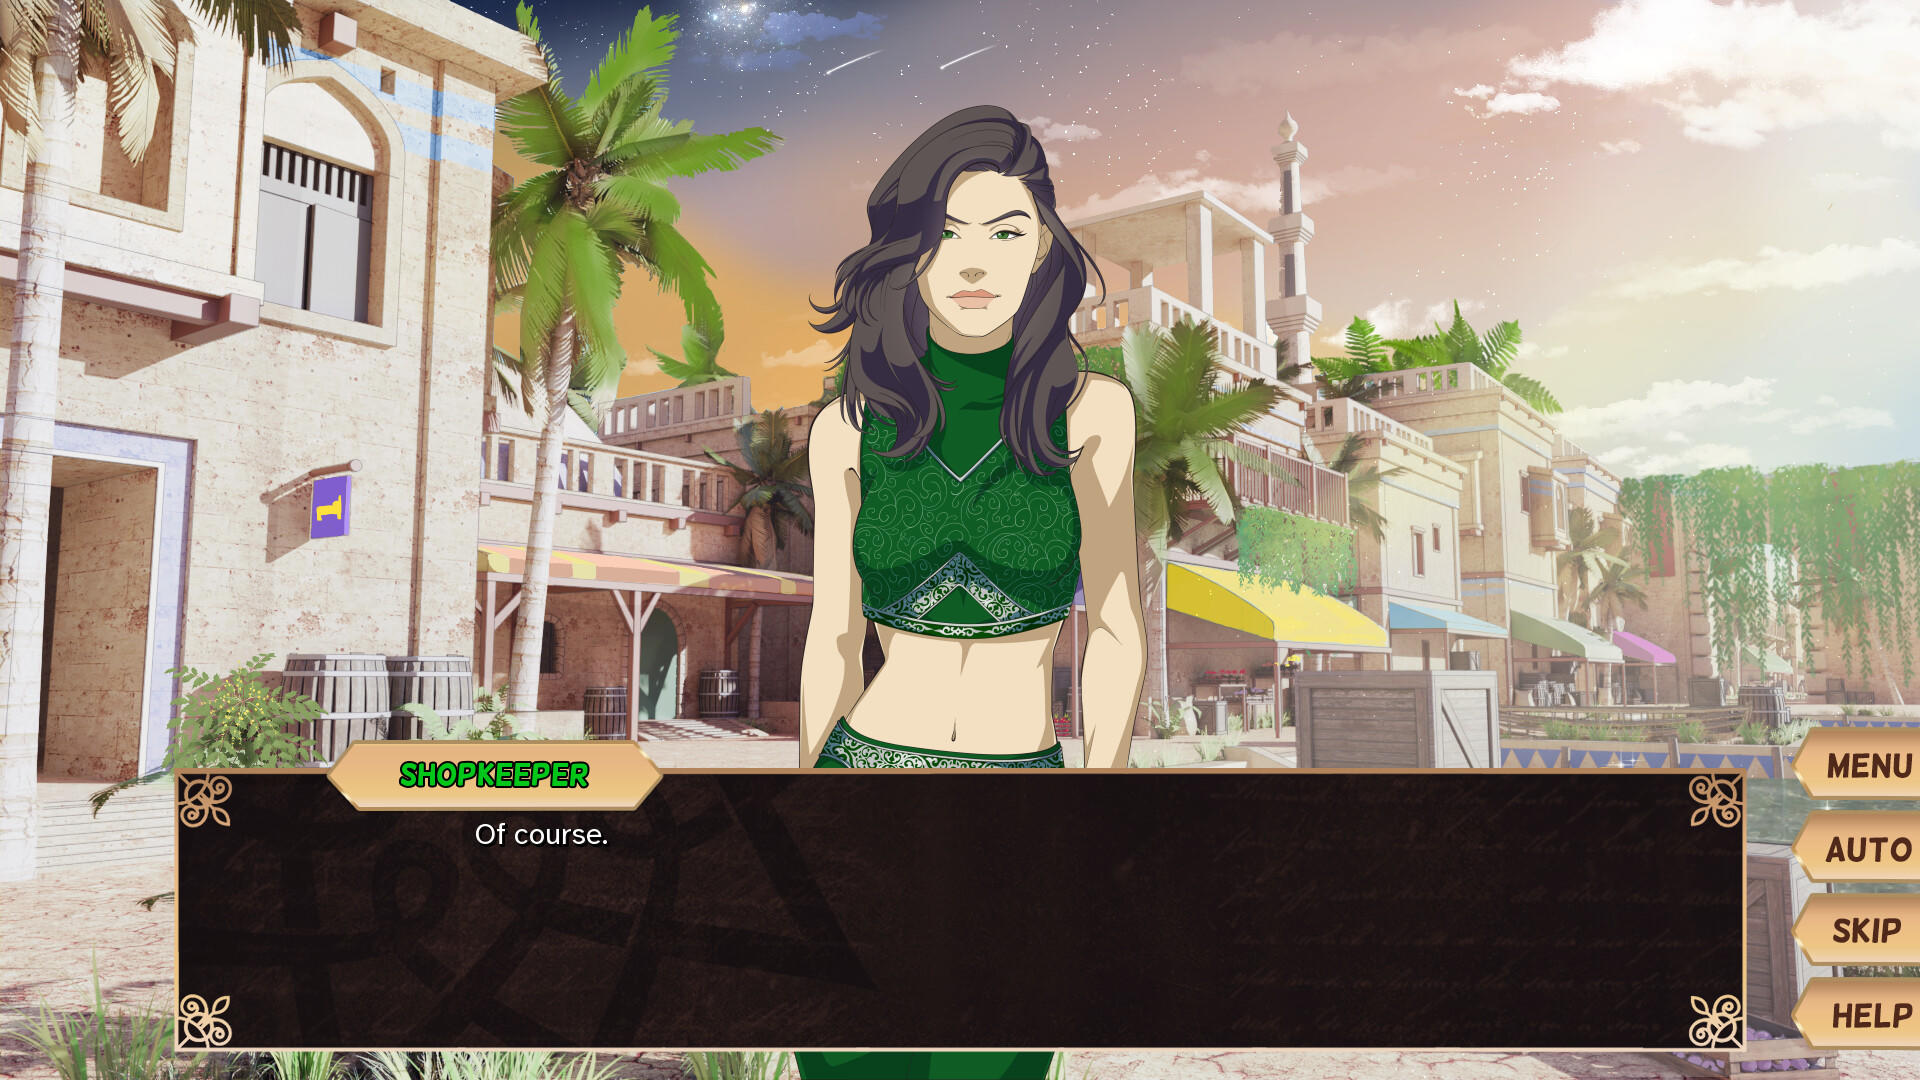 Garden of Seif: Chronicles of an Assassin screenshot game